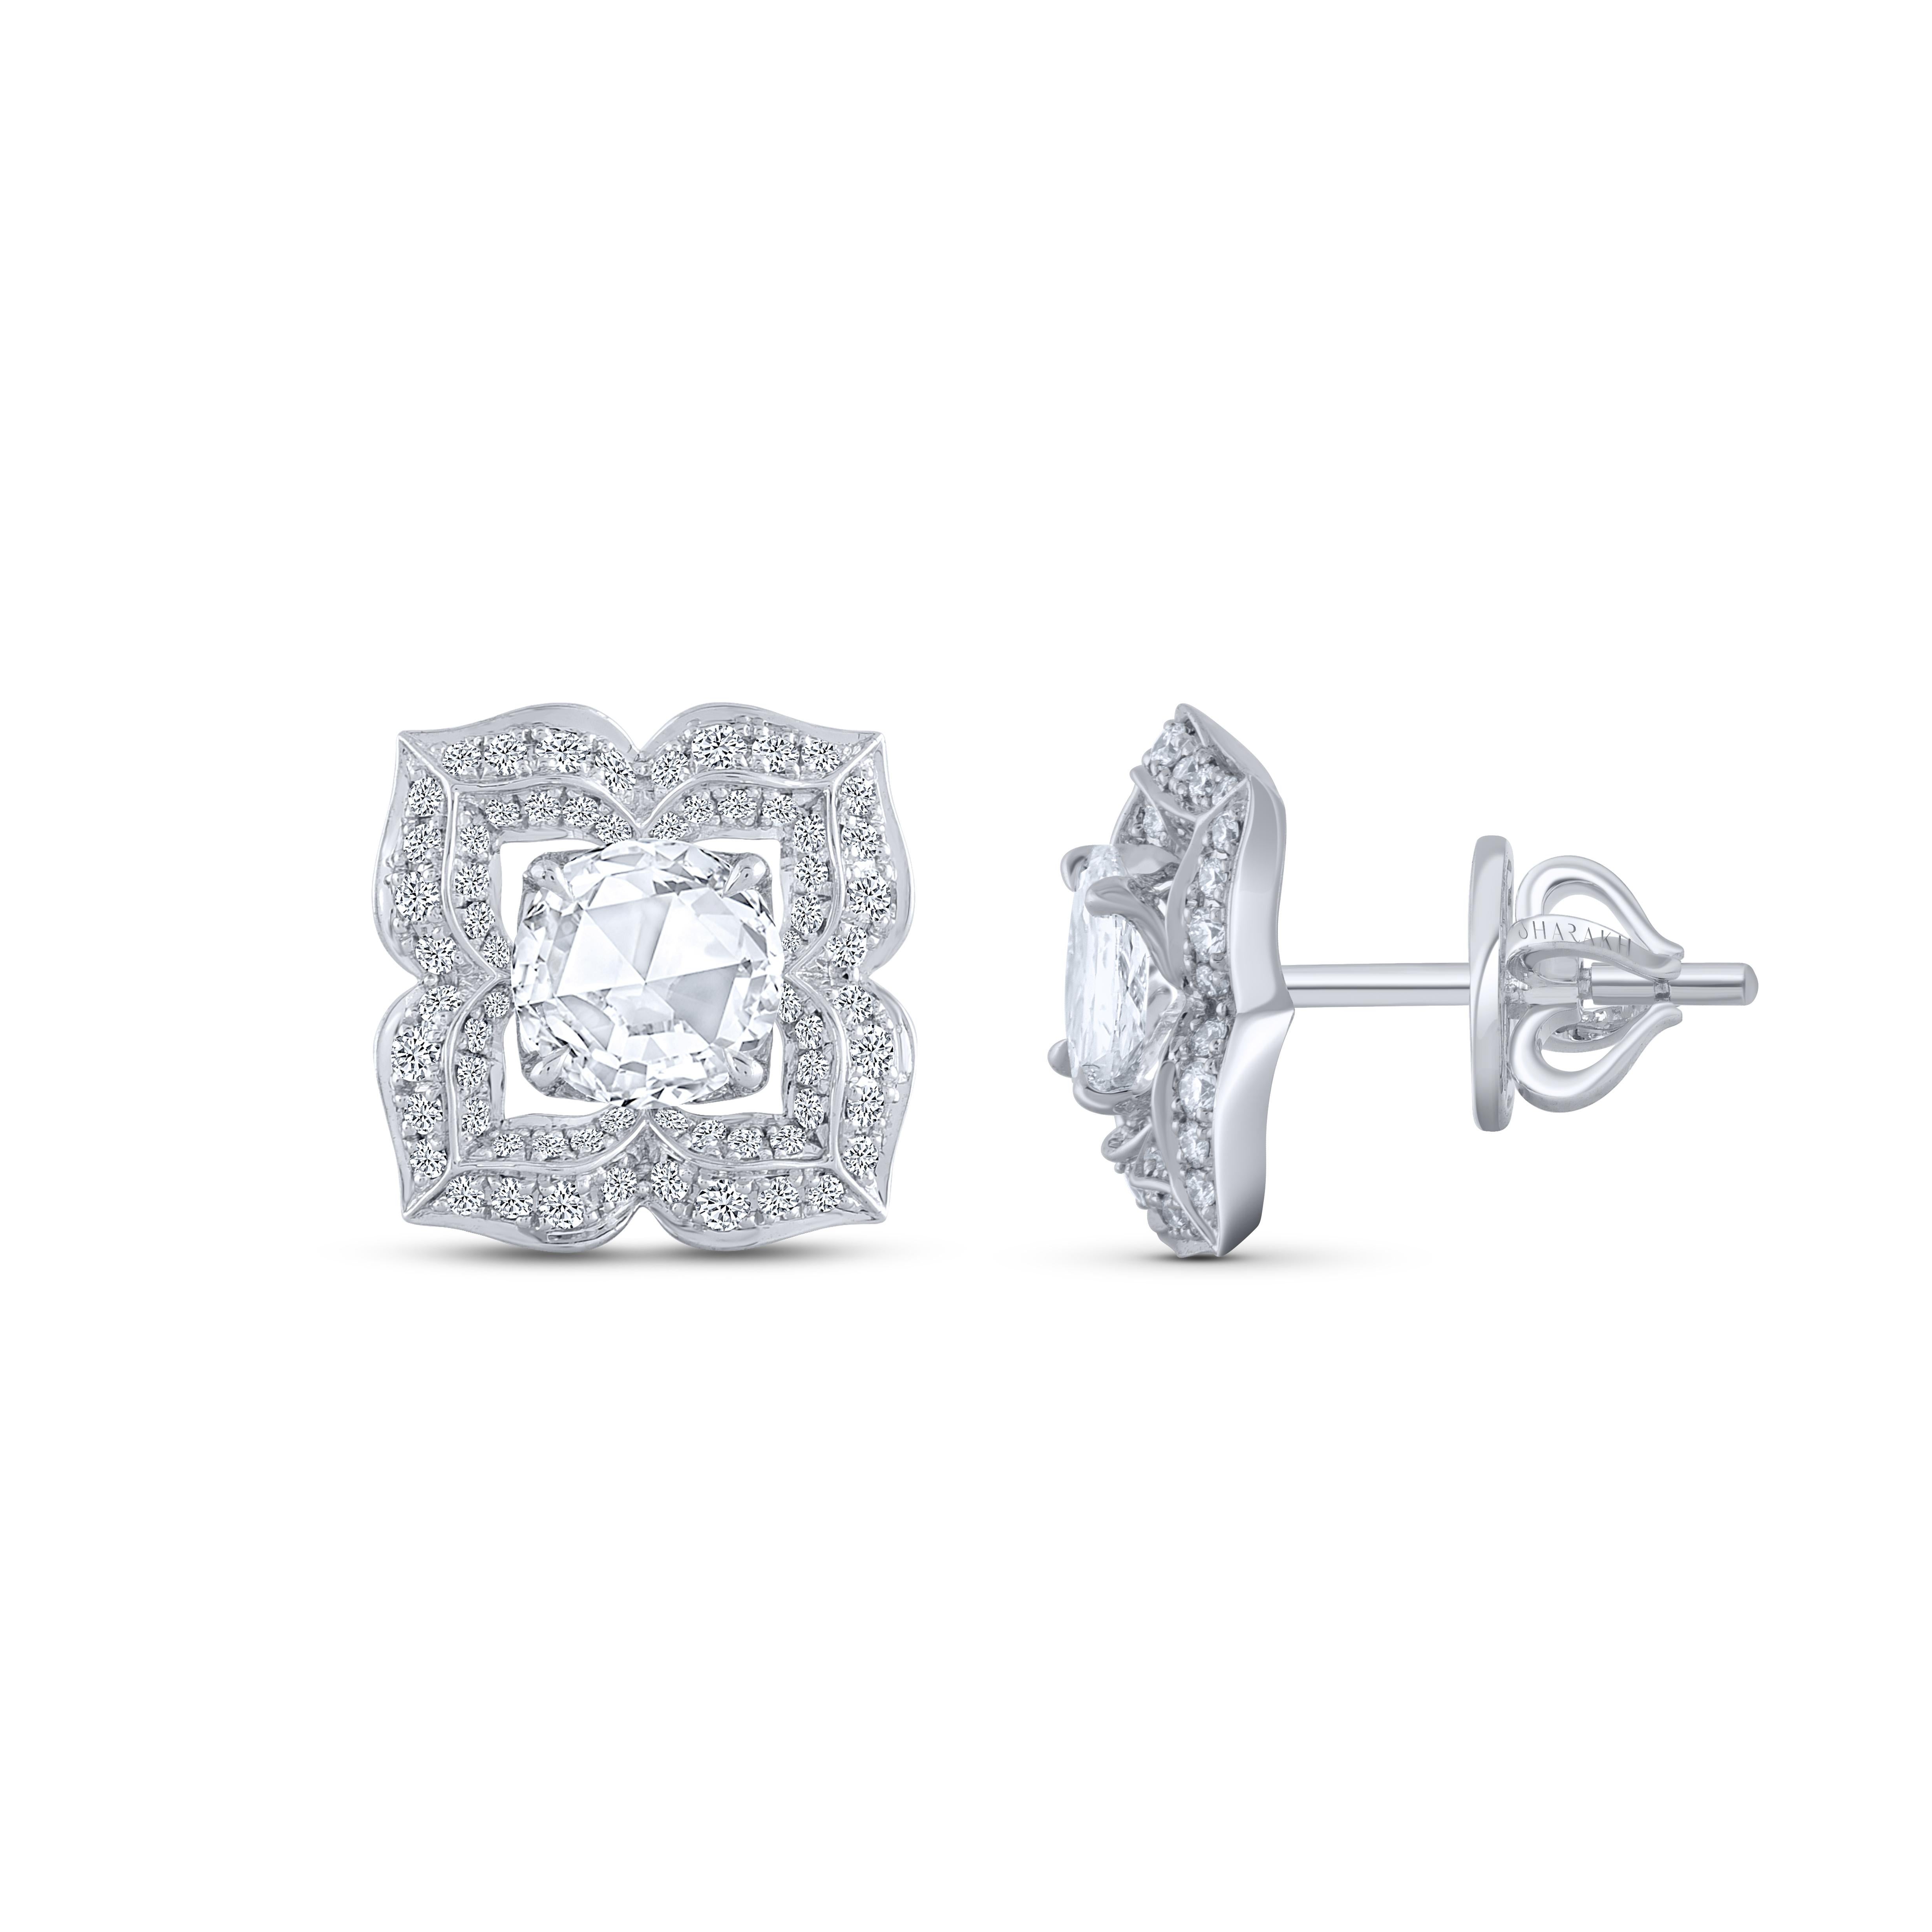 Diese wunderschönen Ohrringe sind mit 112 Diamanten im Brillantschliff und 2 Diamanten im Rosenschliff besetzt. Das Gesamtgewicht der Diamanten in diesen Ohrringen beträgt 0,94 Karat. Alle Diamanten haben die Farbe D-F und die Reinheit IF-VS. Dieser